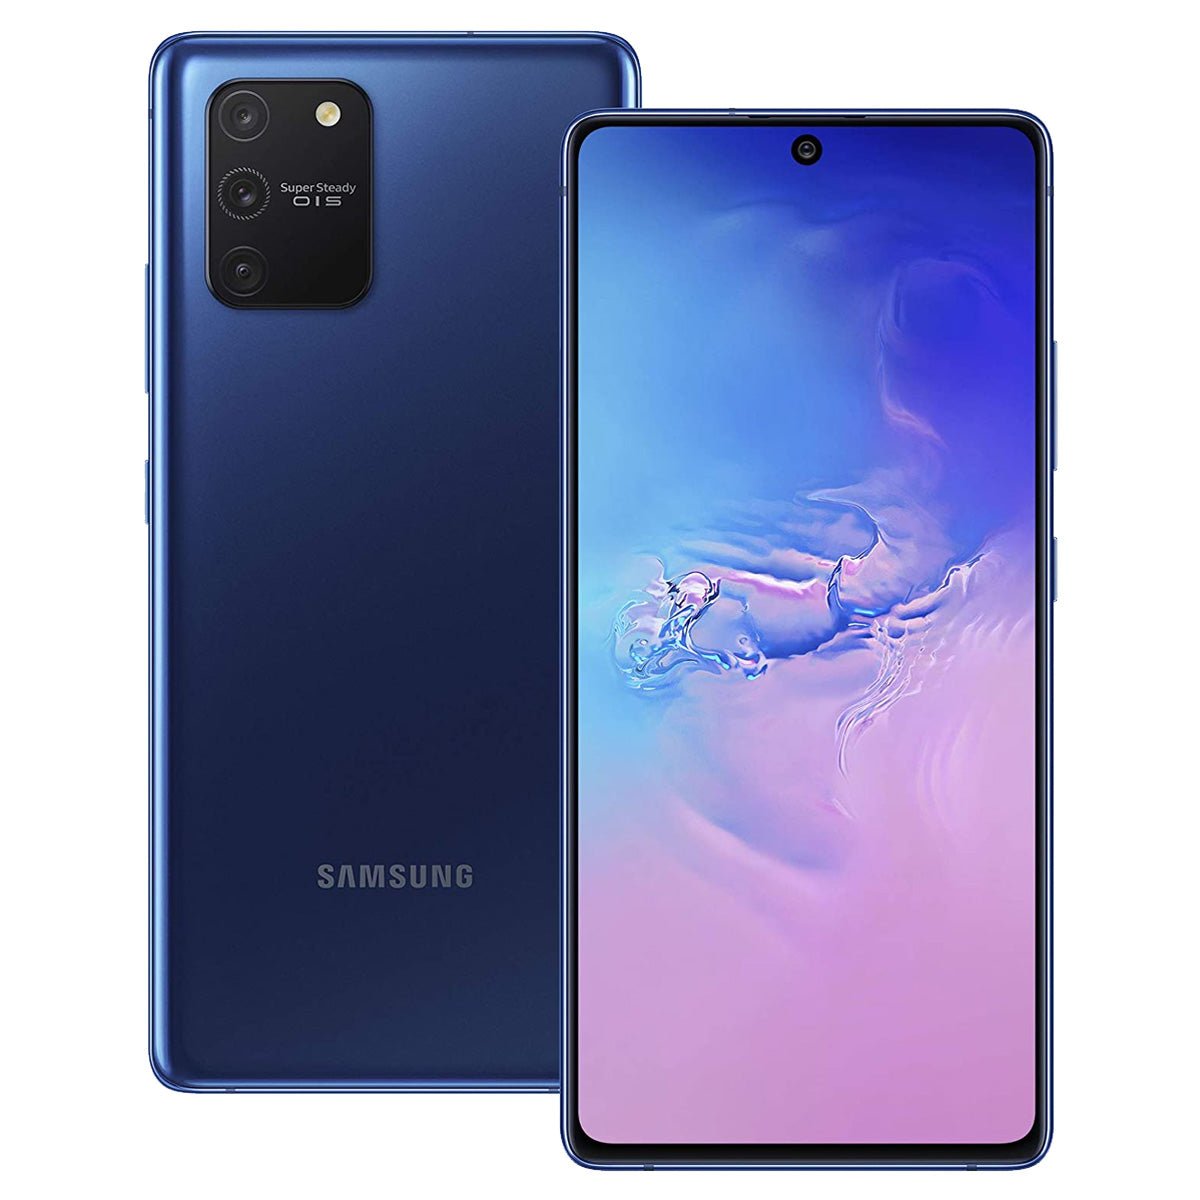 Samsung Galaxy S10 Lite EXCELLENT Condition Unlocked Smartphone - RueZone Smartphone Prism Blue 128GB